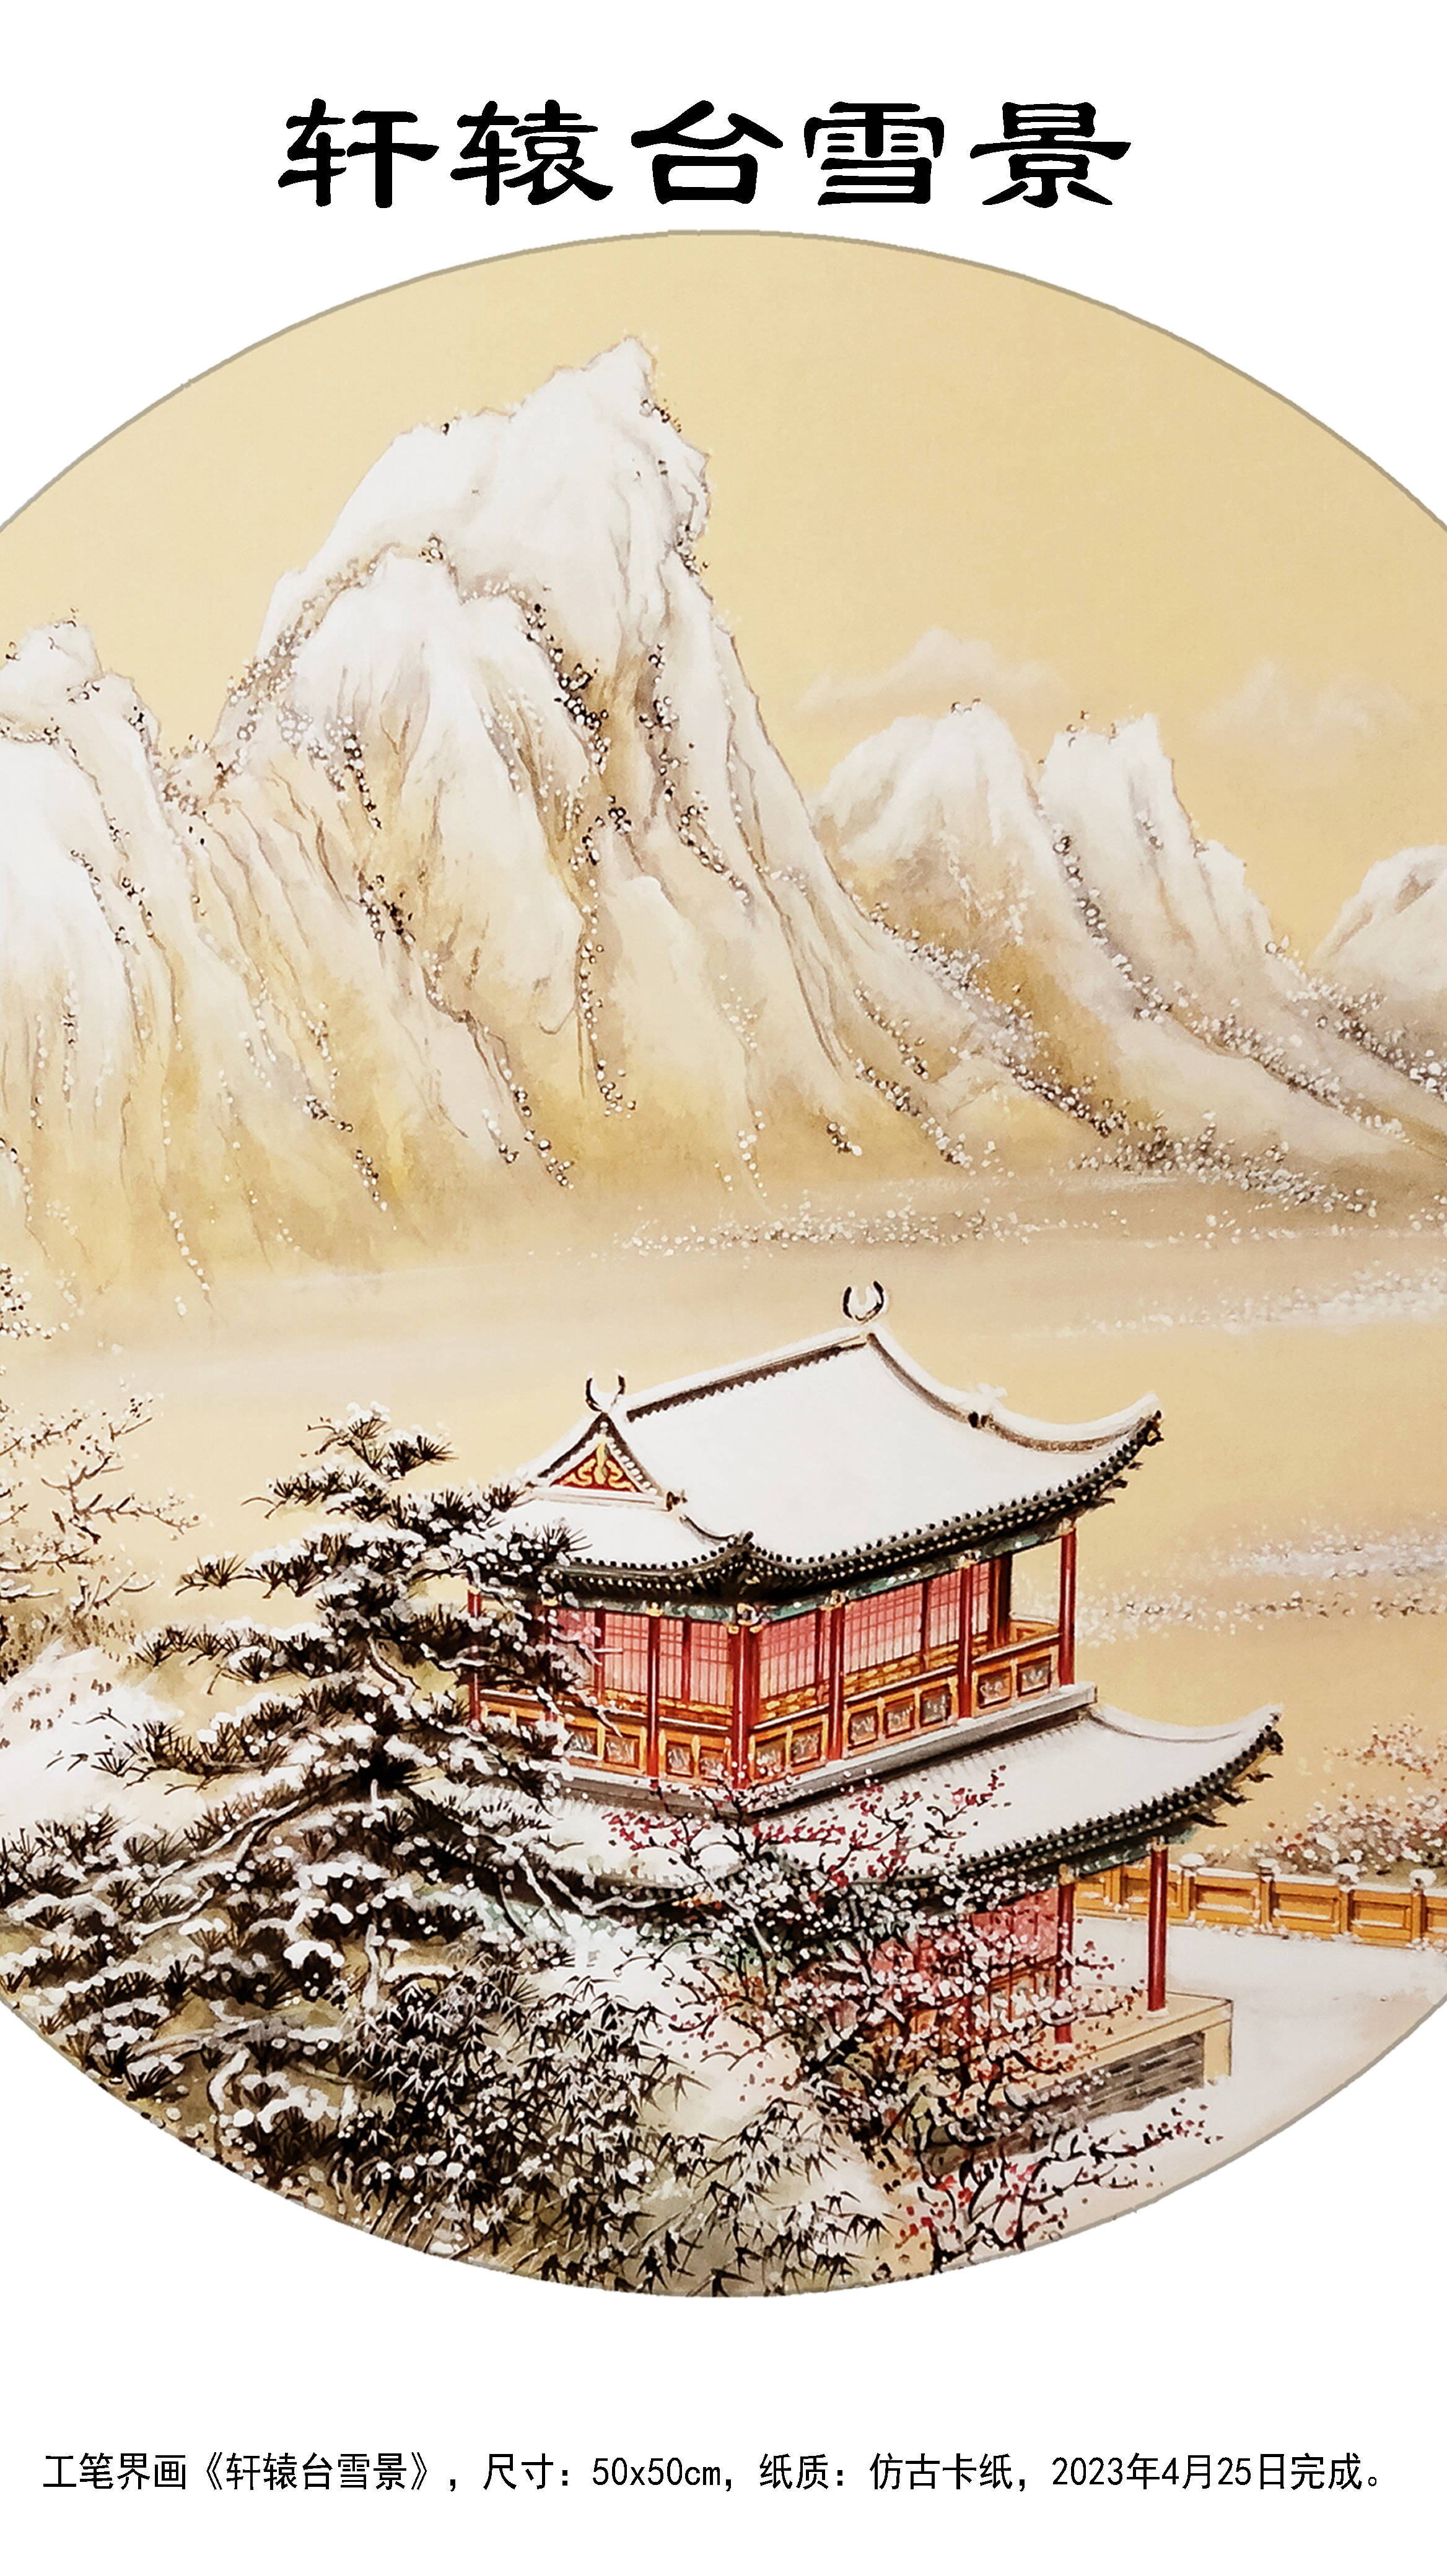 界画寒江---工笔雪景界画《轩辕台雪景》_手机搜狐网